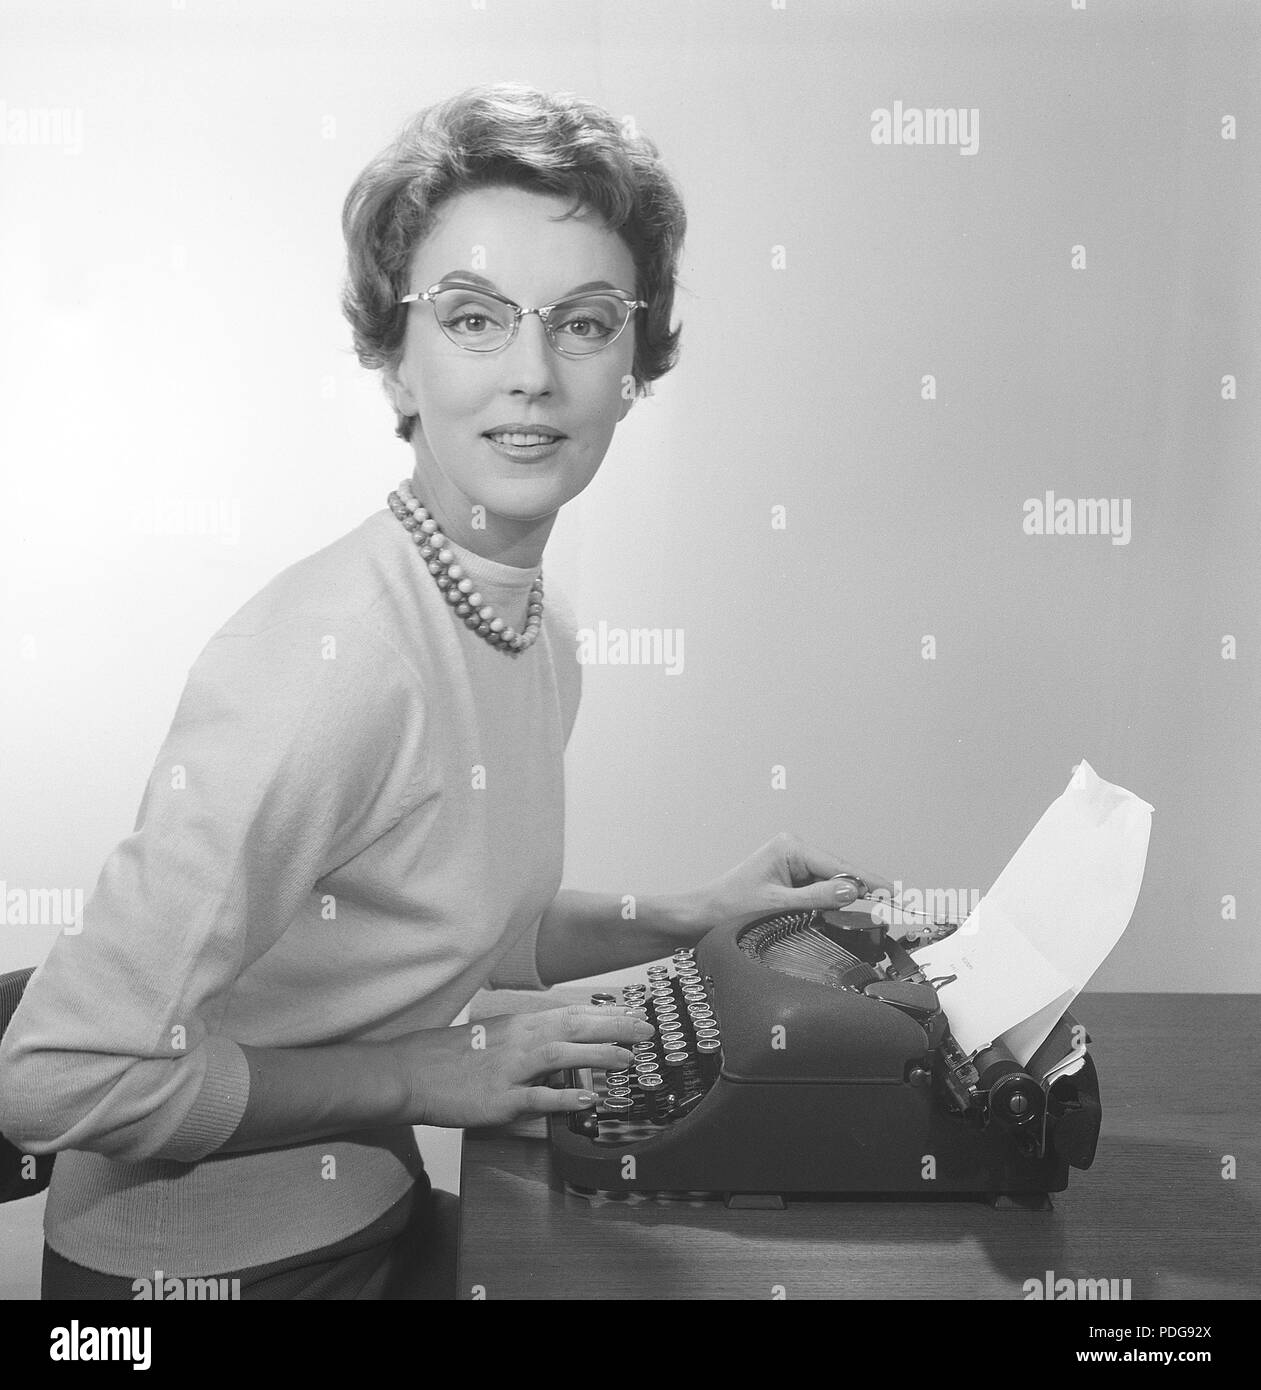 Office girl negli anni '1950s. Una ragazza giovane alla sua macchina da scrivere sta portando i vetri tipici degli anni cinquanta e il ponticello. 1958. Foto Kristoffersson/CB96-10 Foto Stock